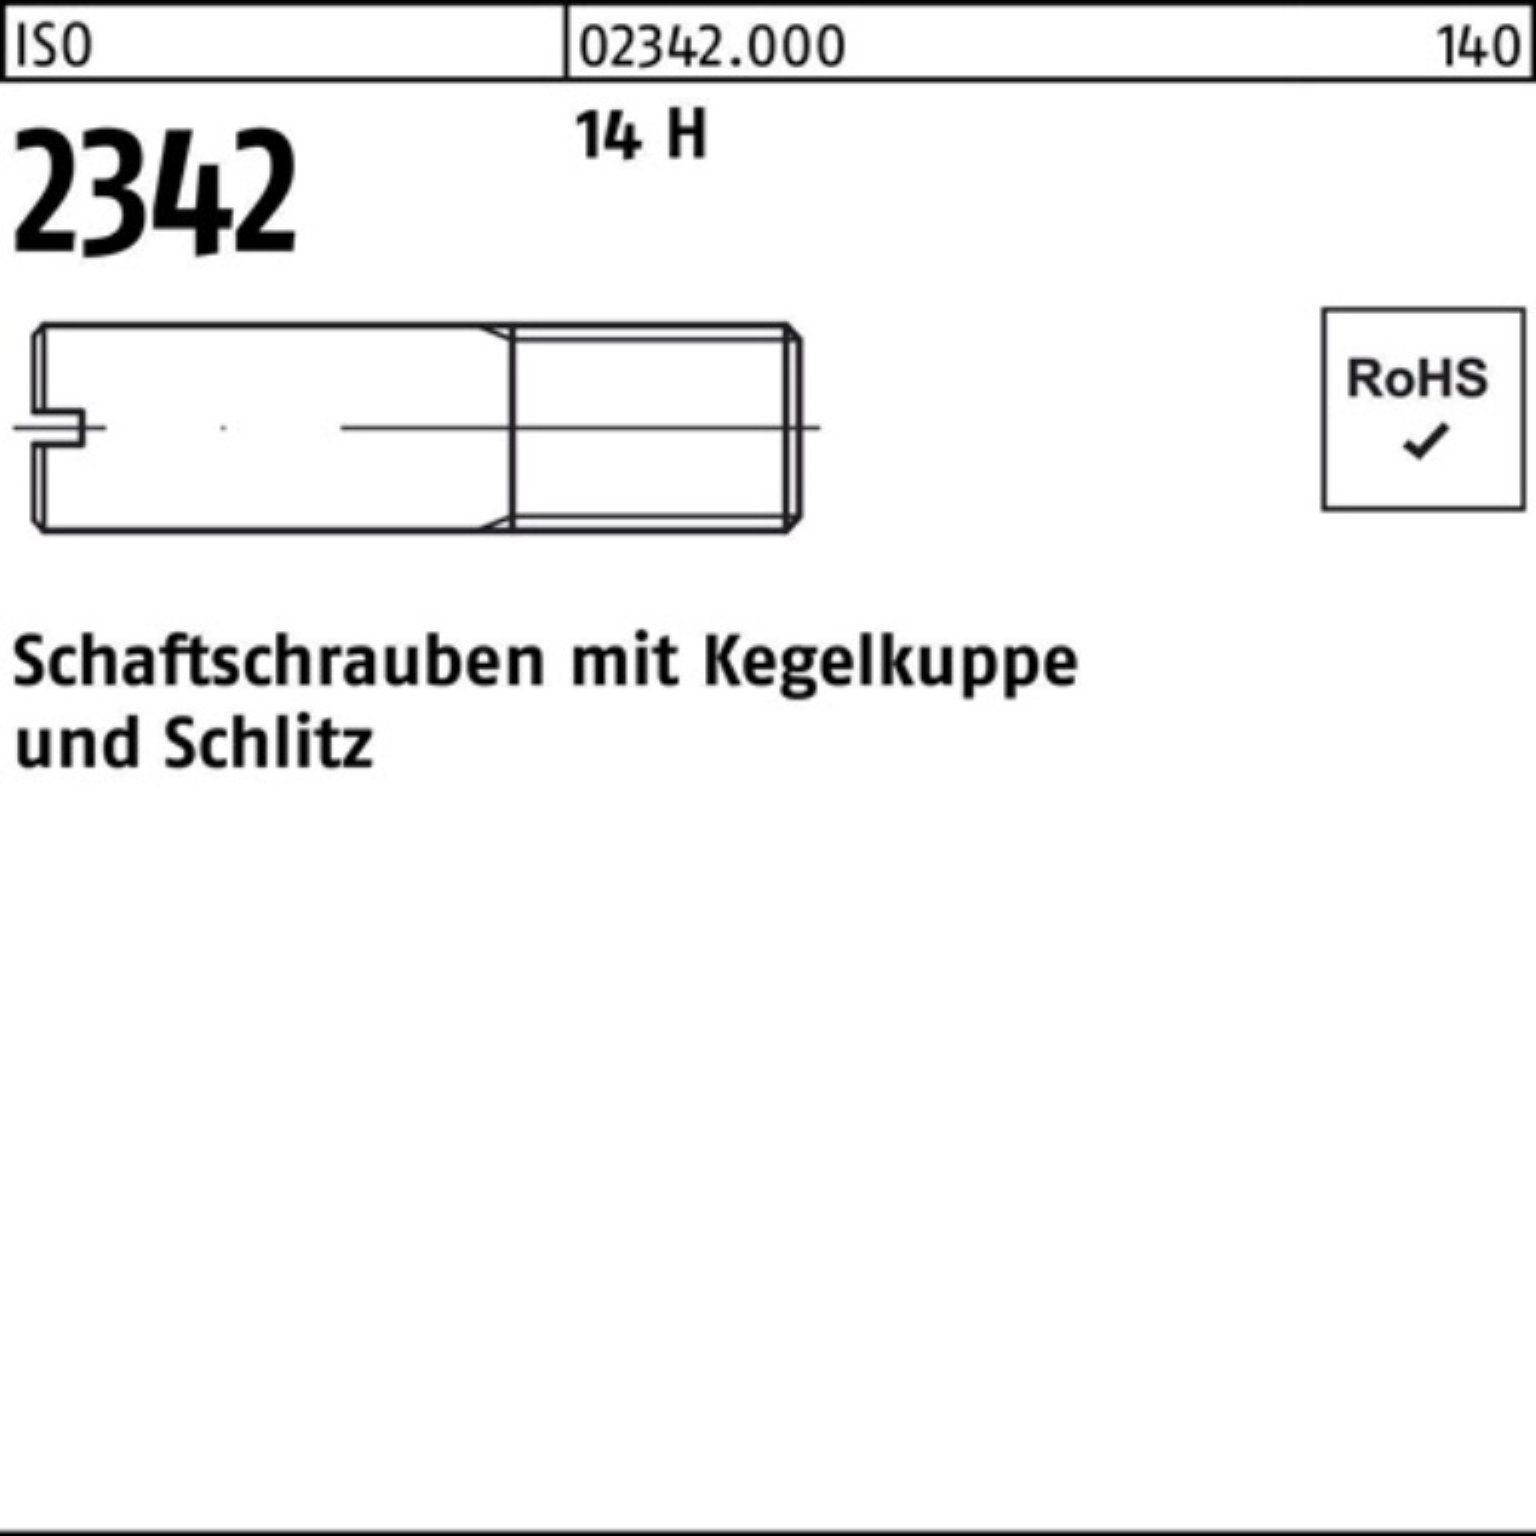 Reyher Schraube 100er Pack Schaftschraube ISO 2342 Kegelkuppe/Schlitz M6x 20 14 H 100